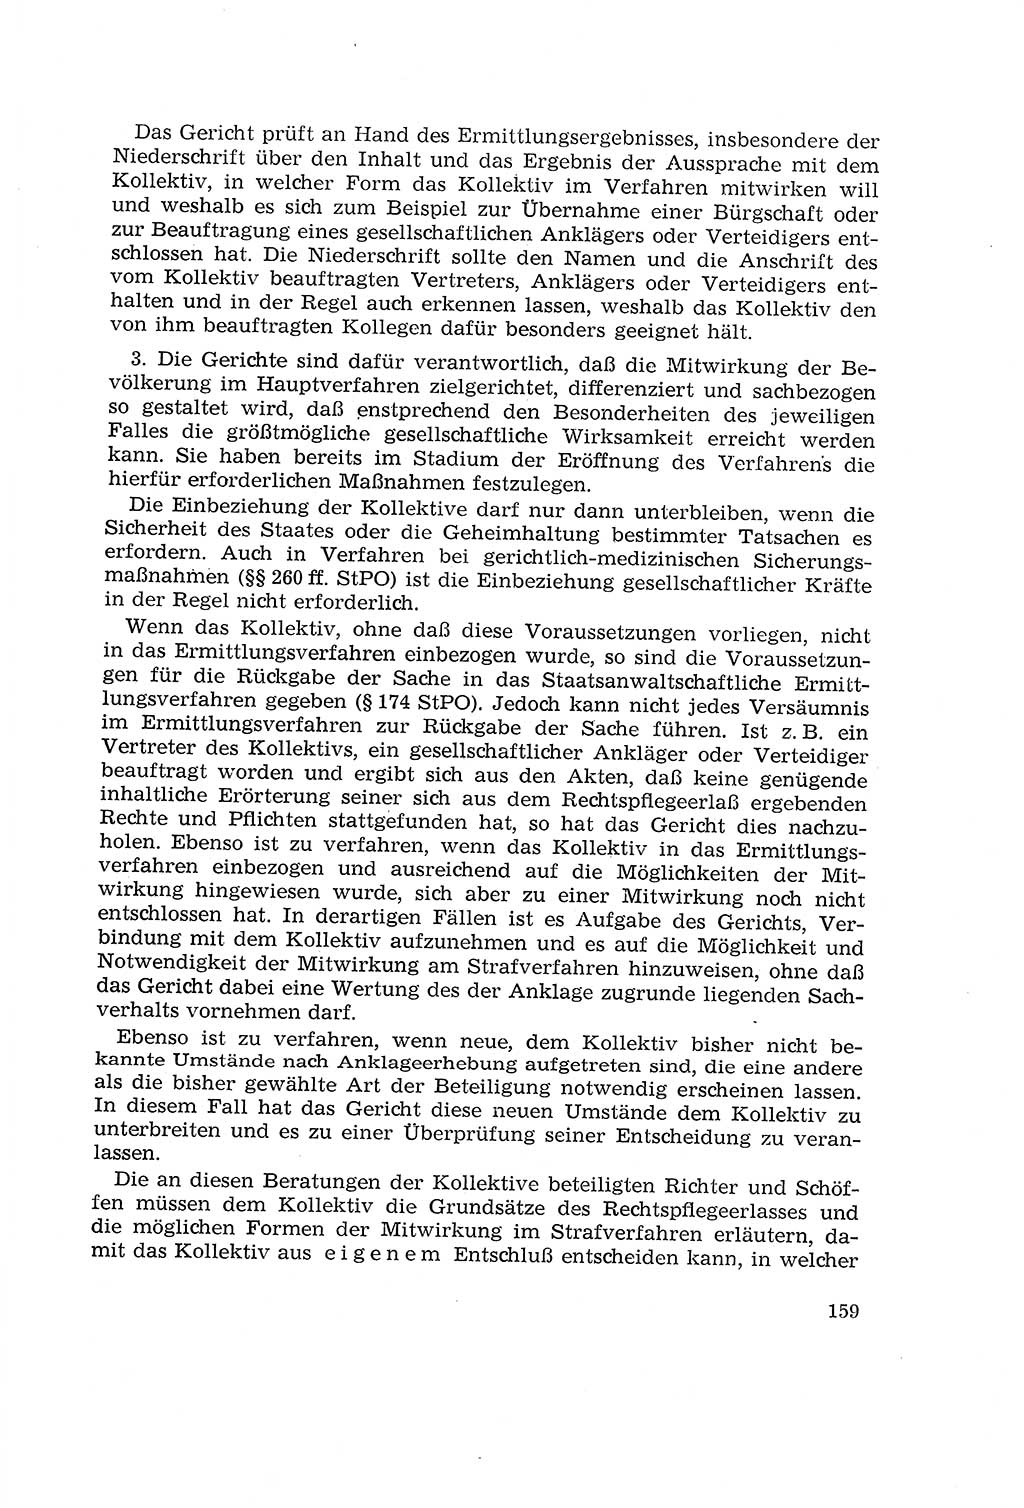 Die Mitwirkung der Werktätigen am Strafverfahren [Deutsche Demokratische Republik (DDR)] 1966, Seite 159 (Mitw. Str.-Verf. DDR 1966, S. 159)